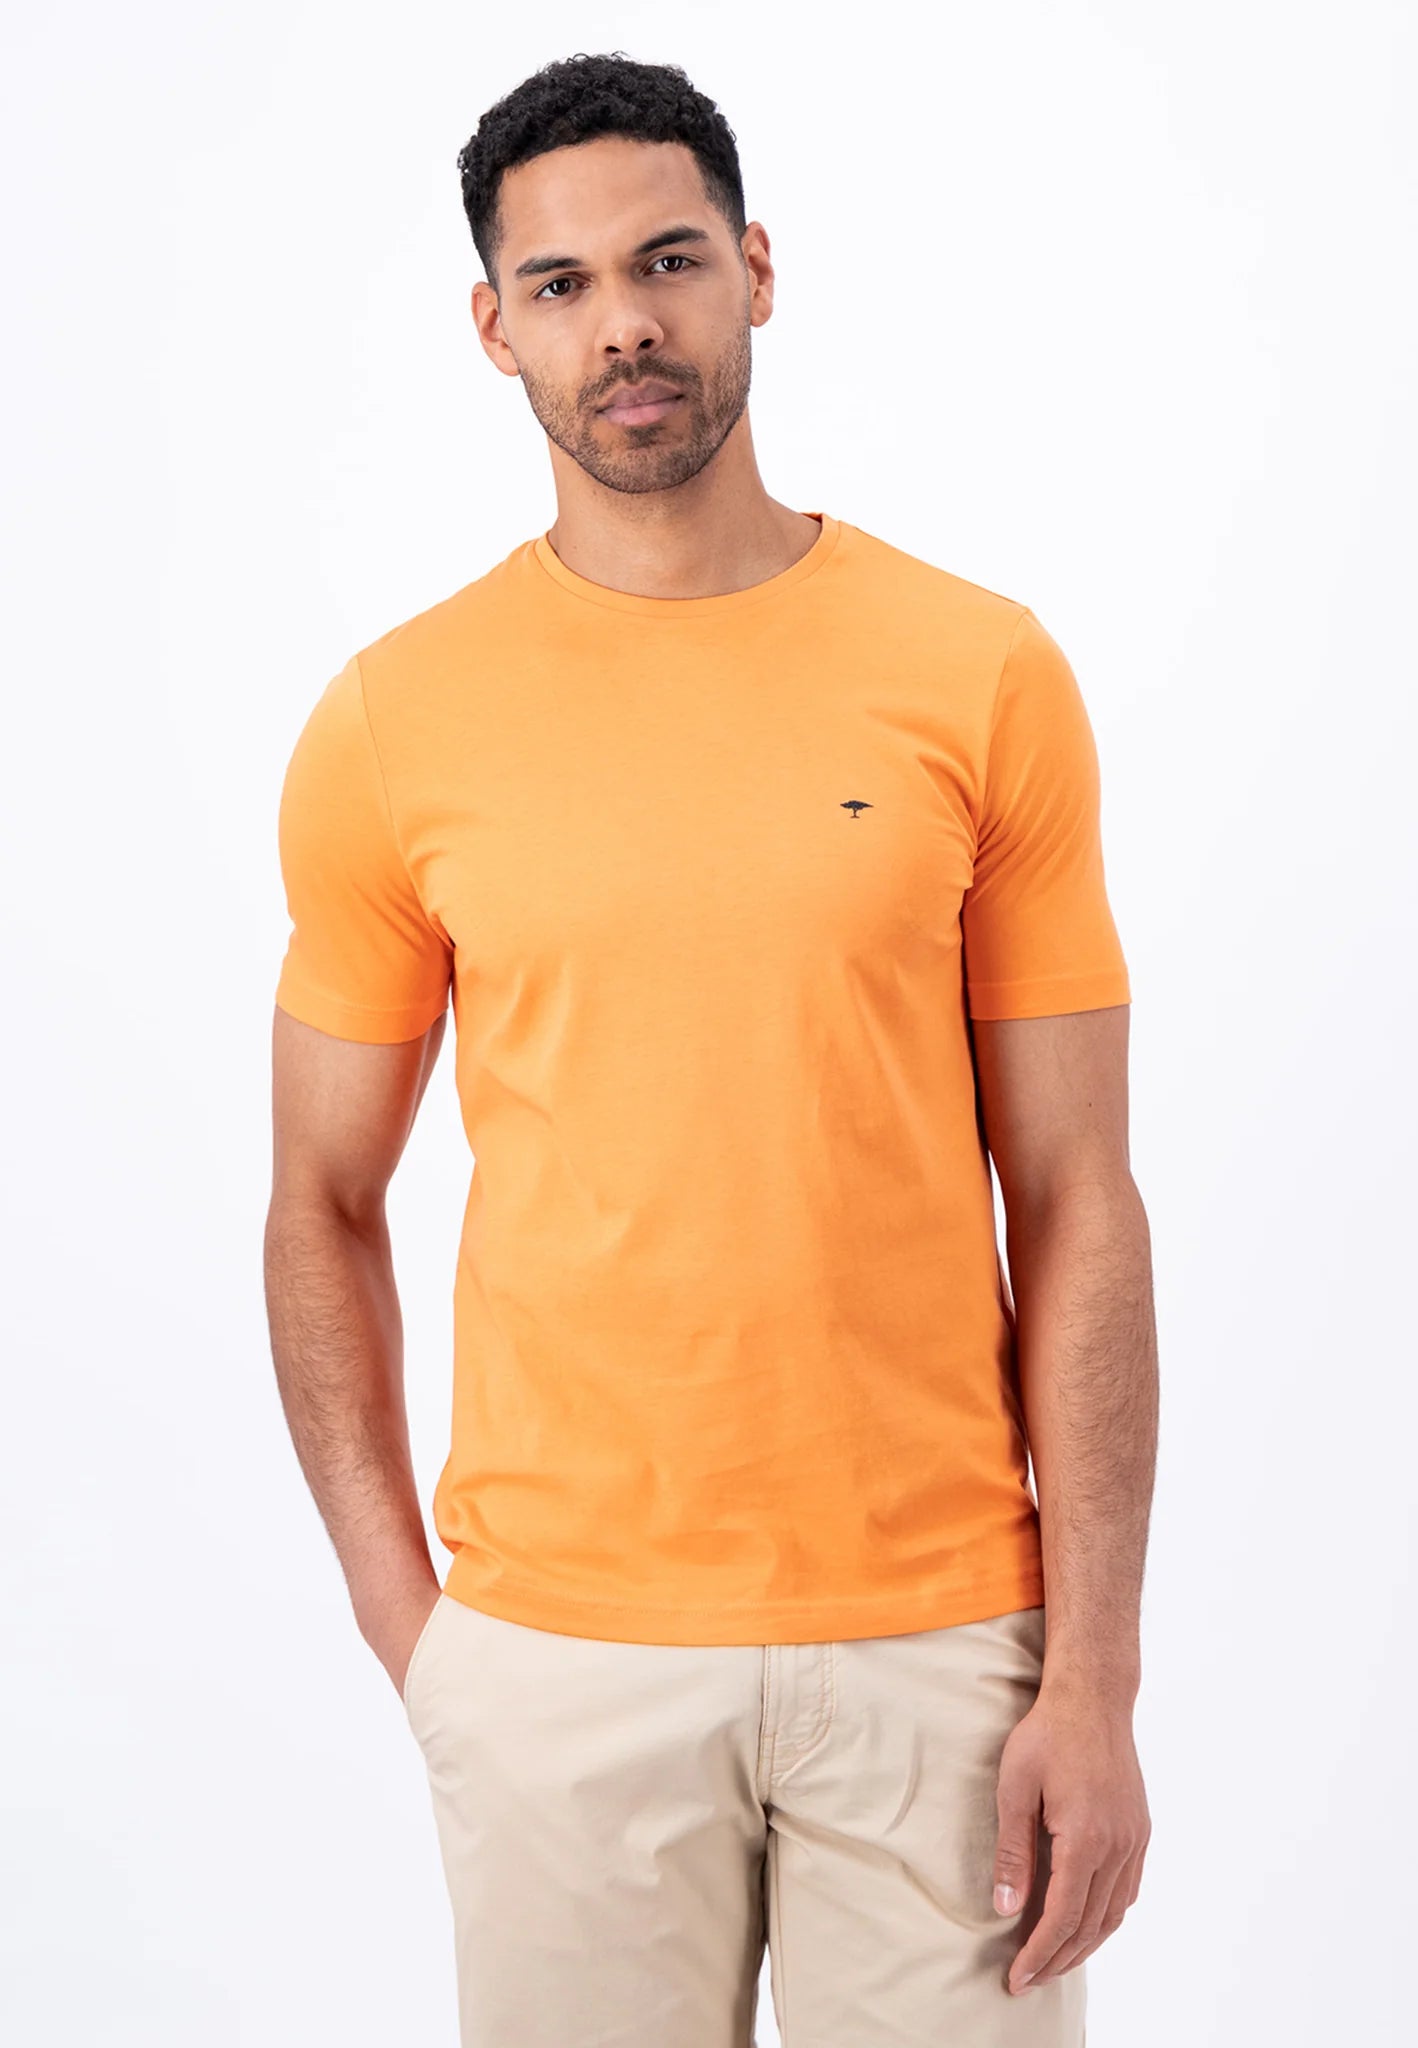 FYNCH HATTON T-Shirt - Men's Round Neck – Papaya